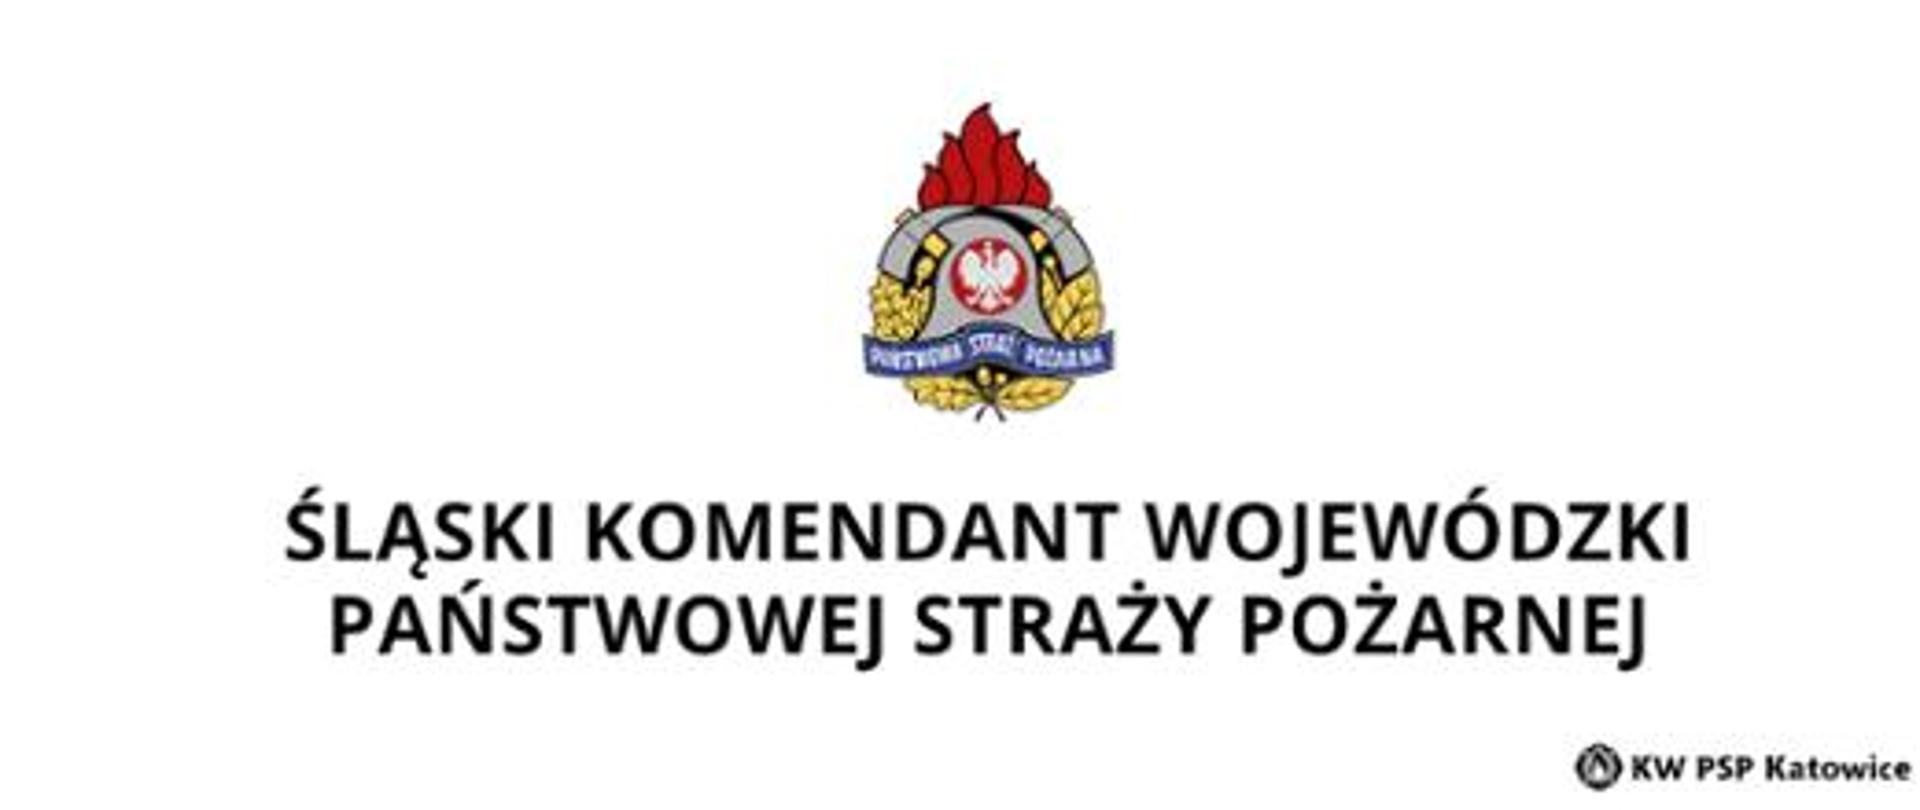 W centralnej części logo PSP, pod spodem napis Śląski Komendant Wojewódzki Państwowej Straży Pożarnej, w prawym dolnym rogu KW PSP Katowice